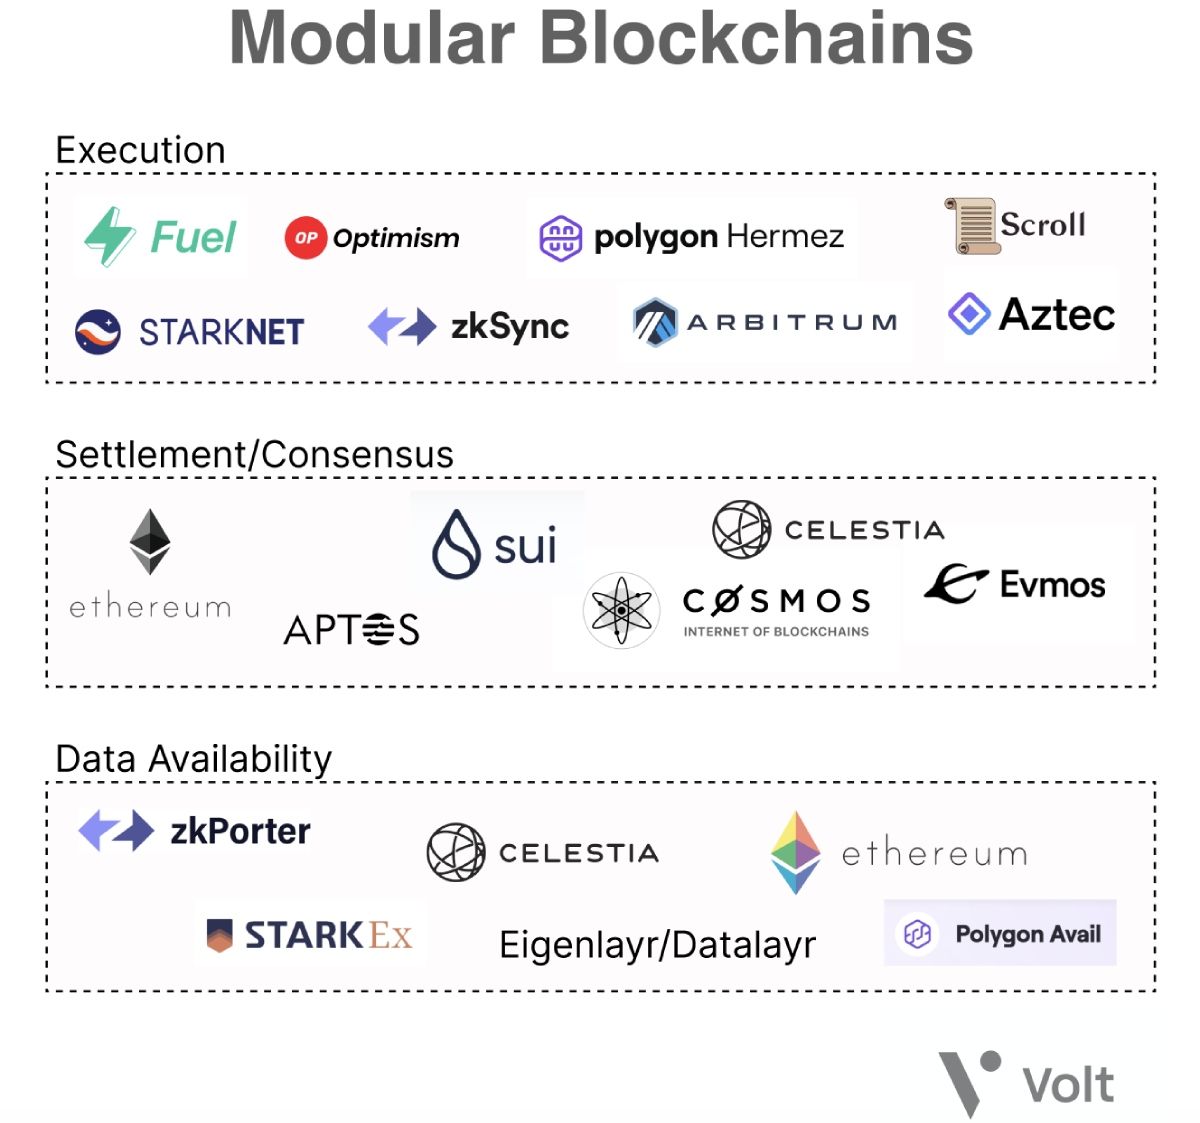 Tổng hợp các dự án nổi bật trong xu hướng Modular Blockchain